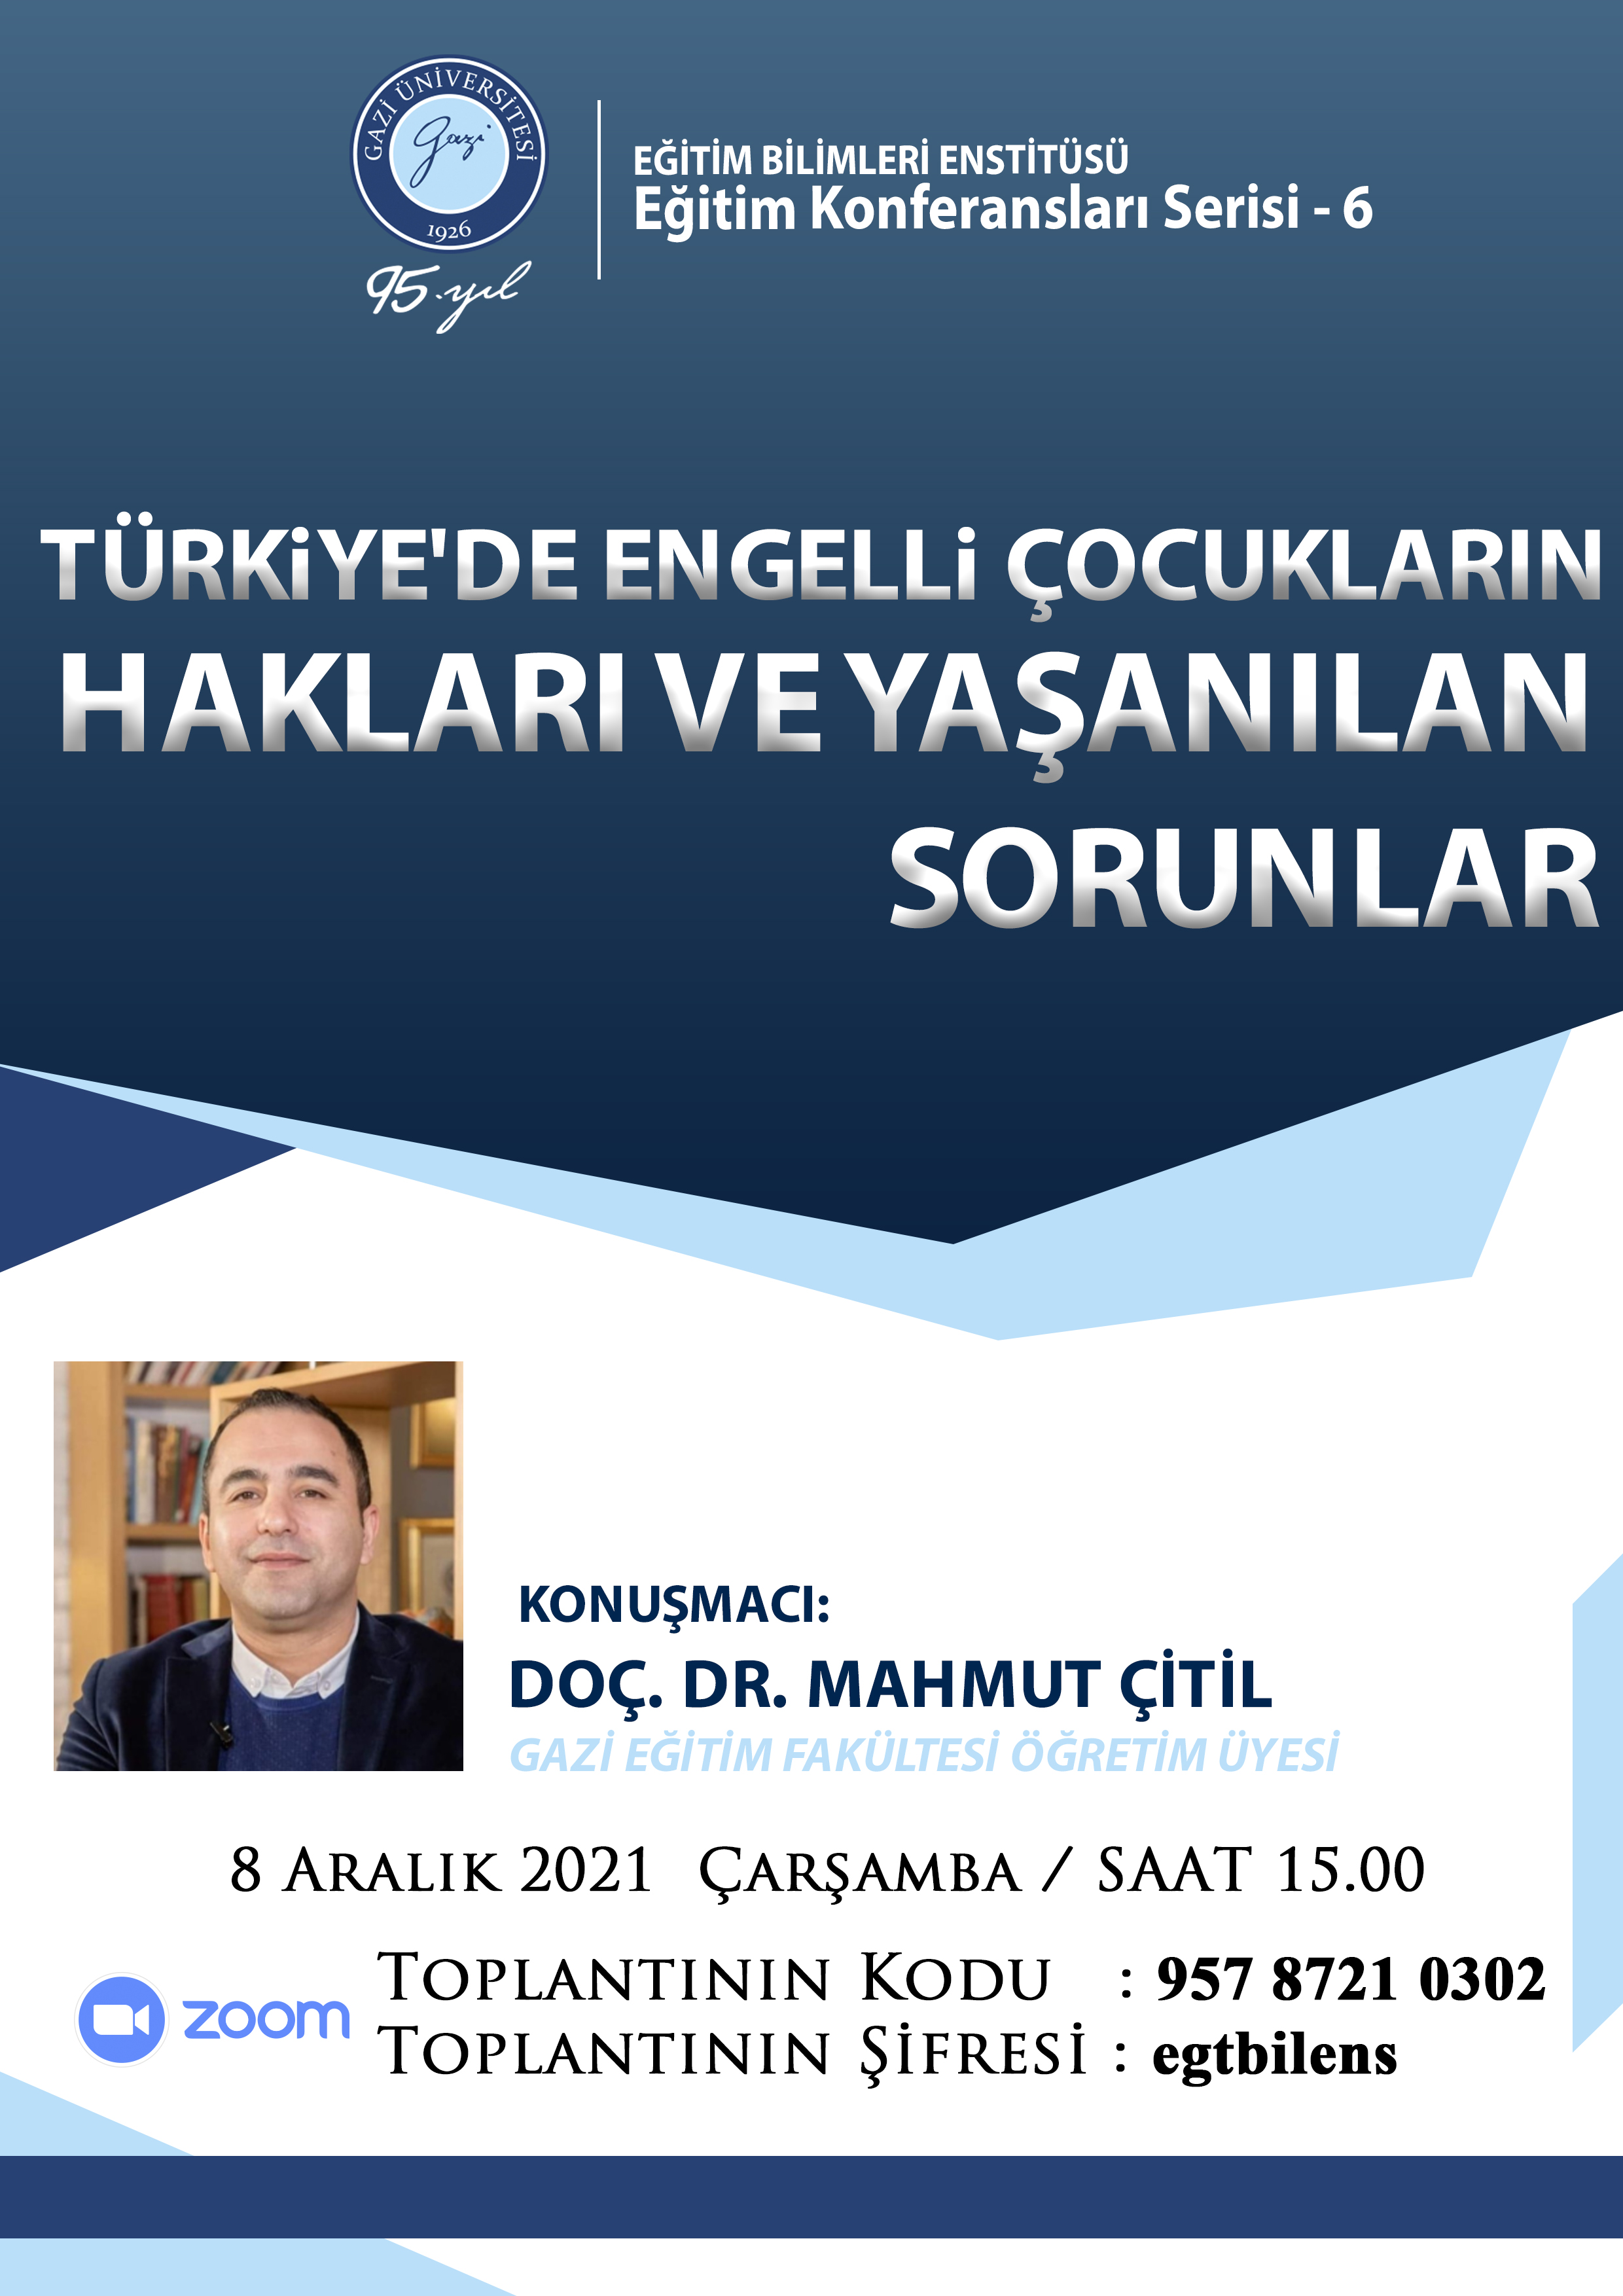 Eğitim Konferansları Serisi-6: Türkiye'de Engelli Çocukların Hakları ve Yaşanılan Sorunlar